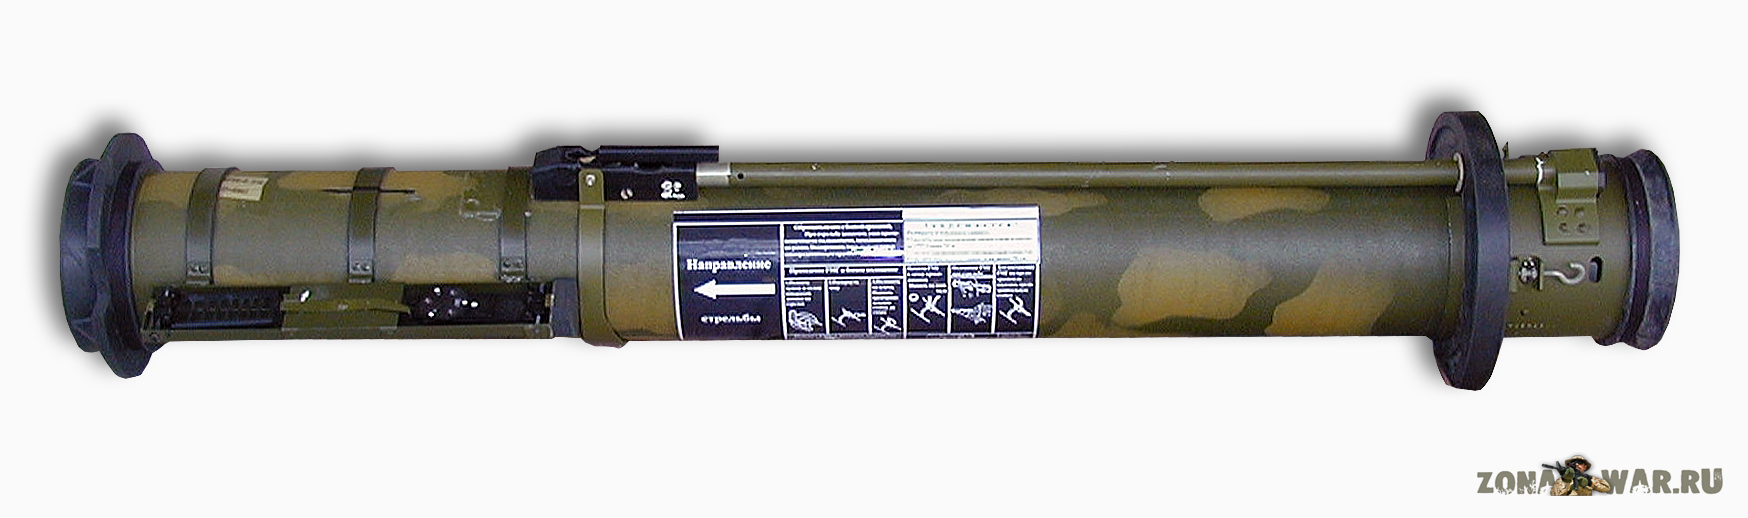 RMG multi-purpose rocket weapon 